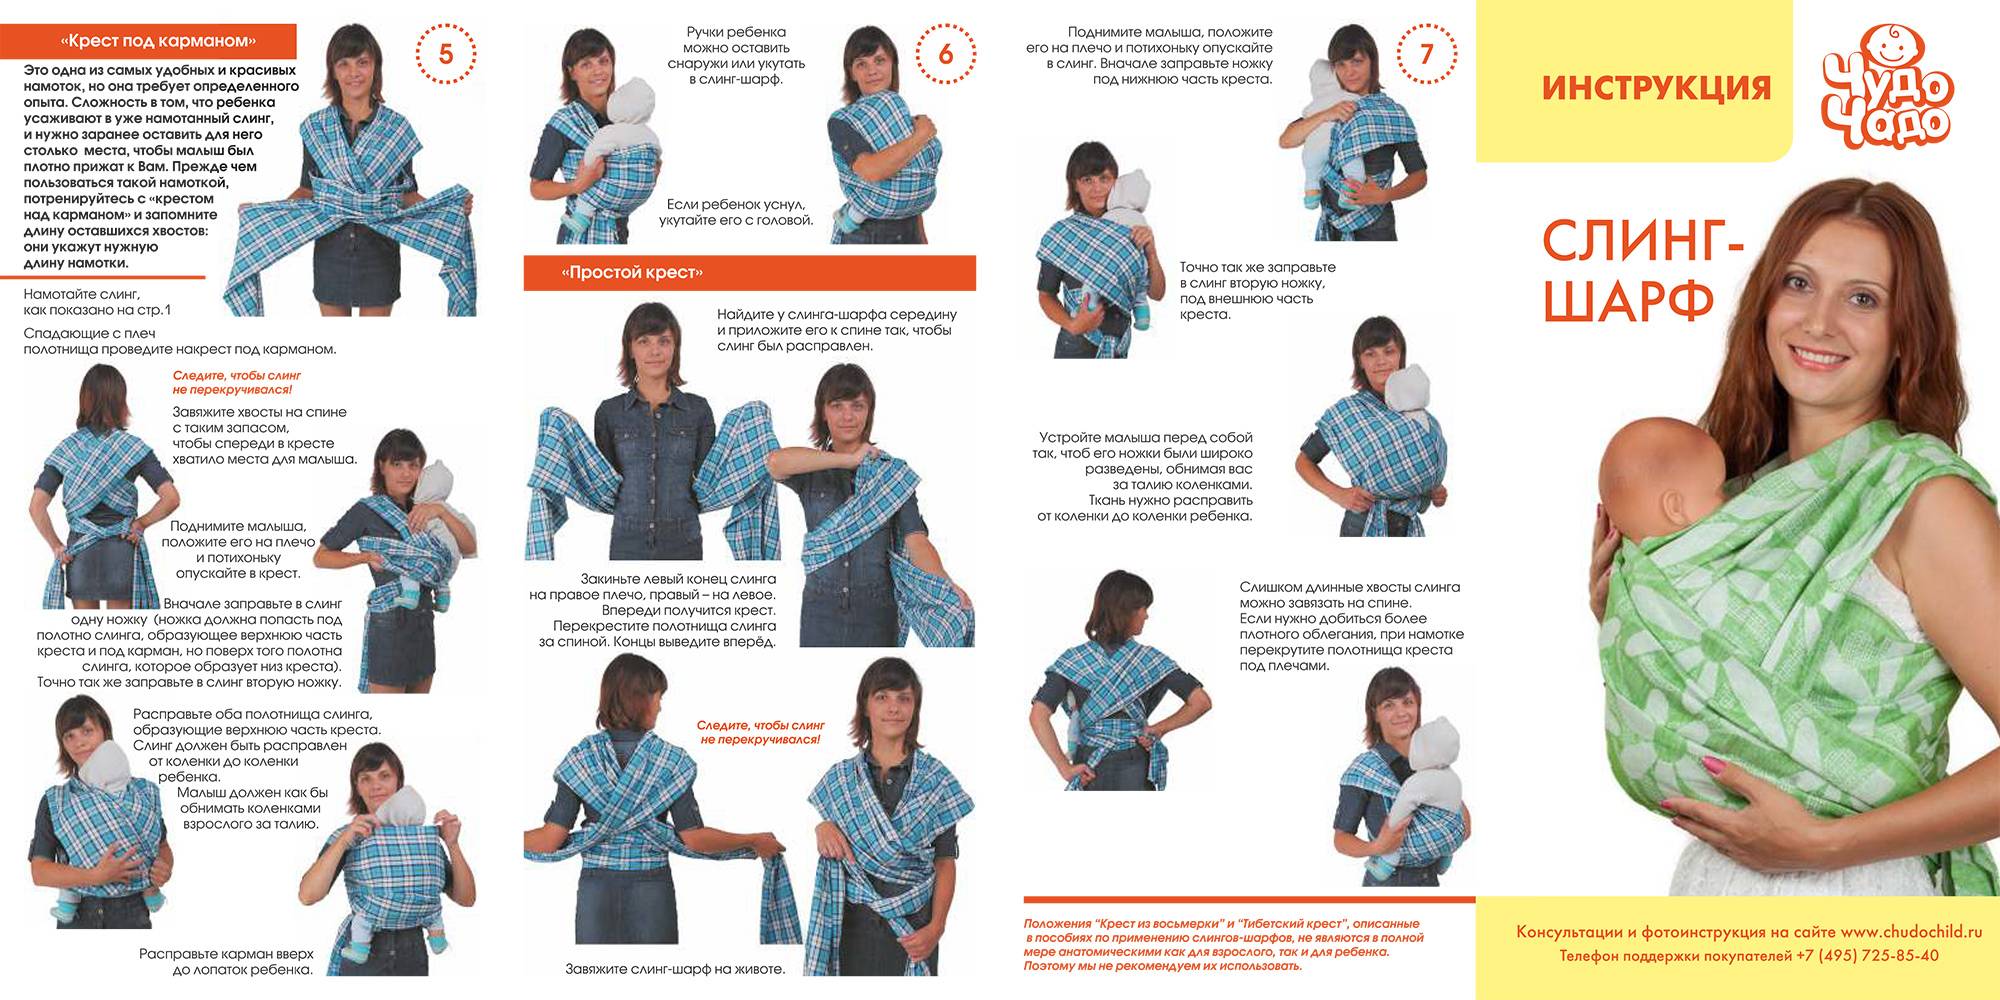 Как завязать слинг шарф для новорожденных своими руками, способы и меры предосторожности